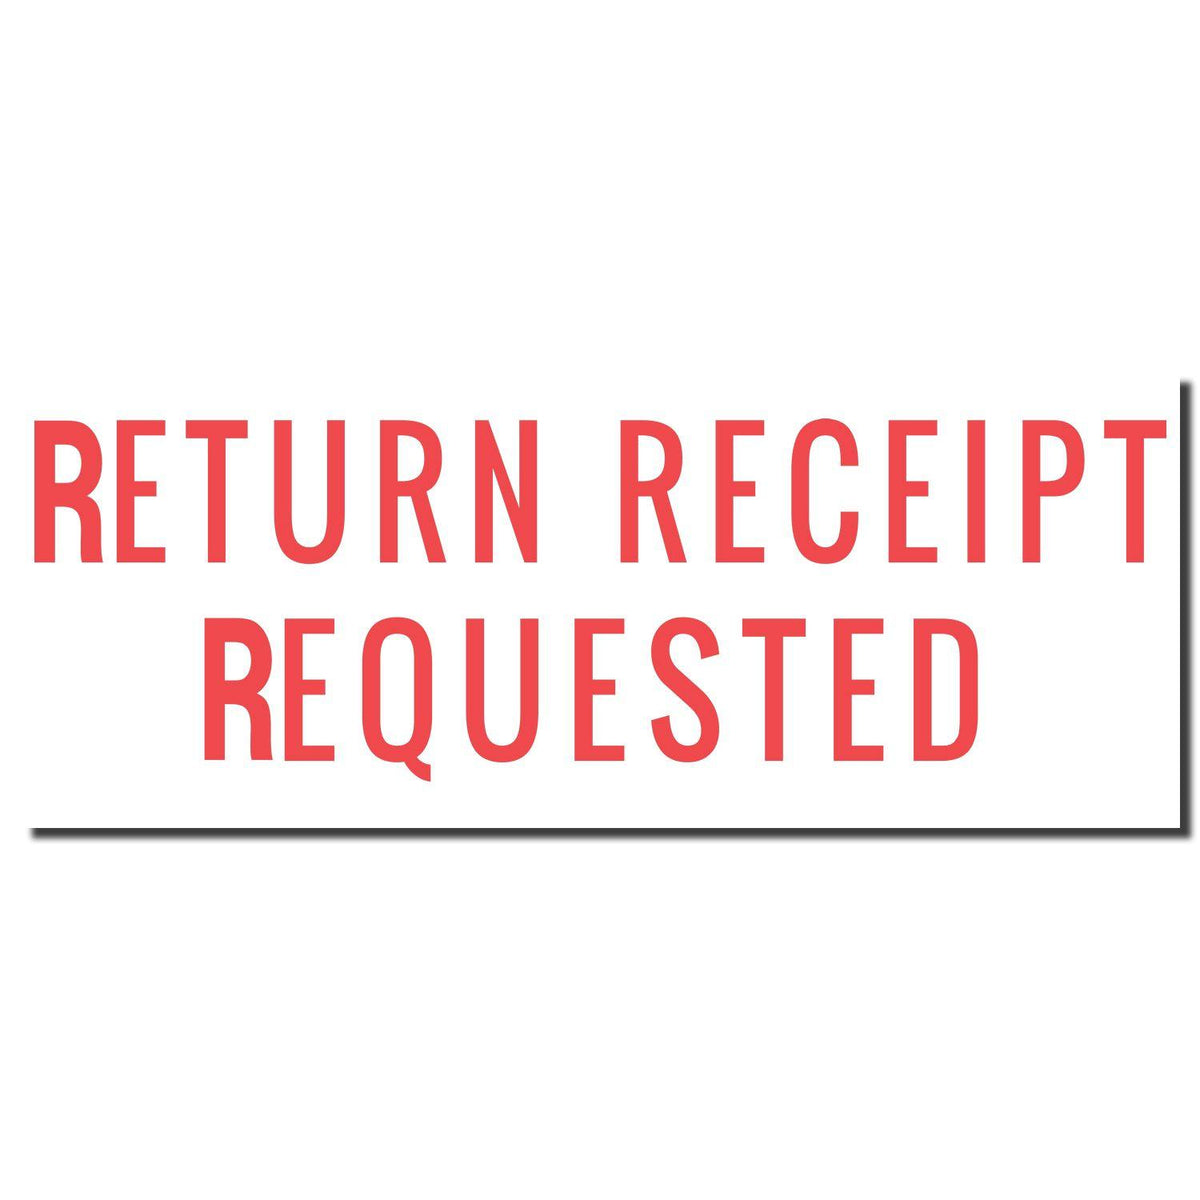 Enlarged Imprint for Return Receipt Requested Xstamper Stamp